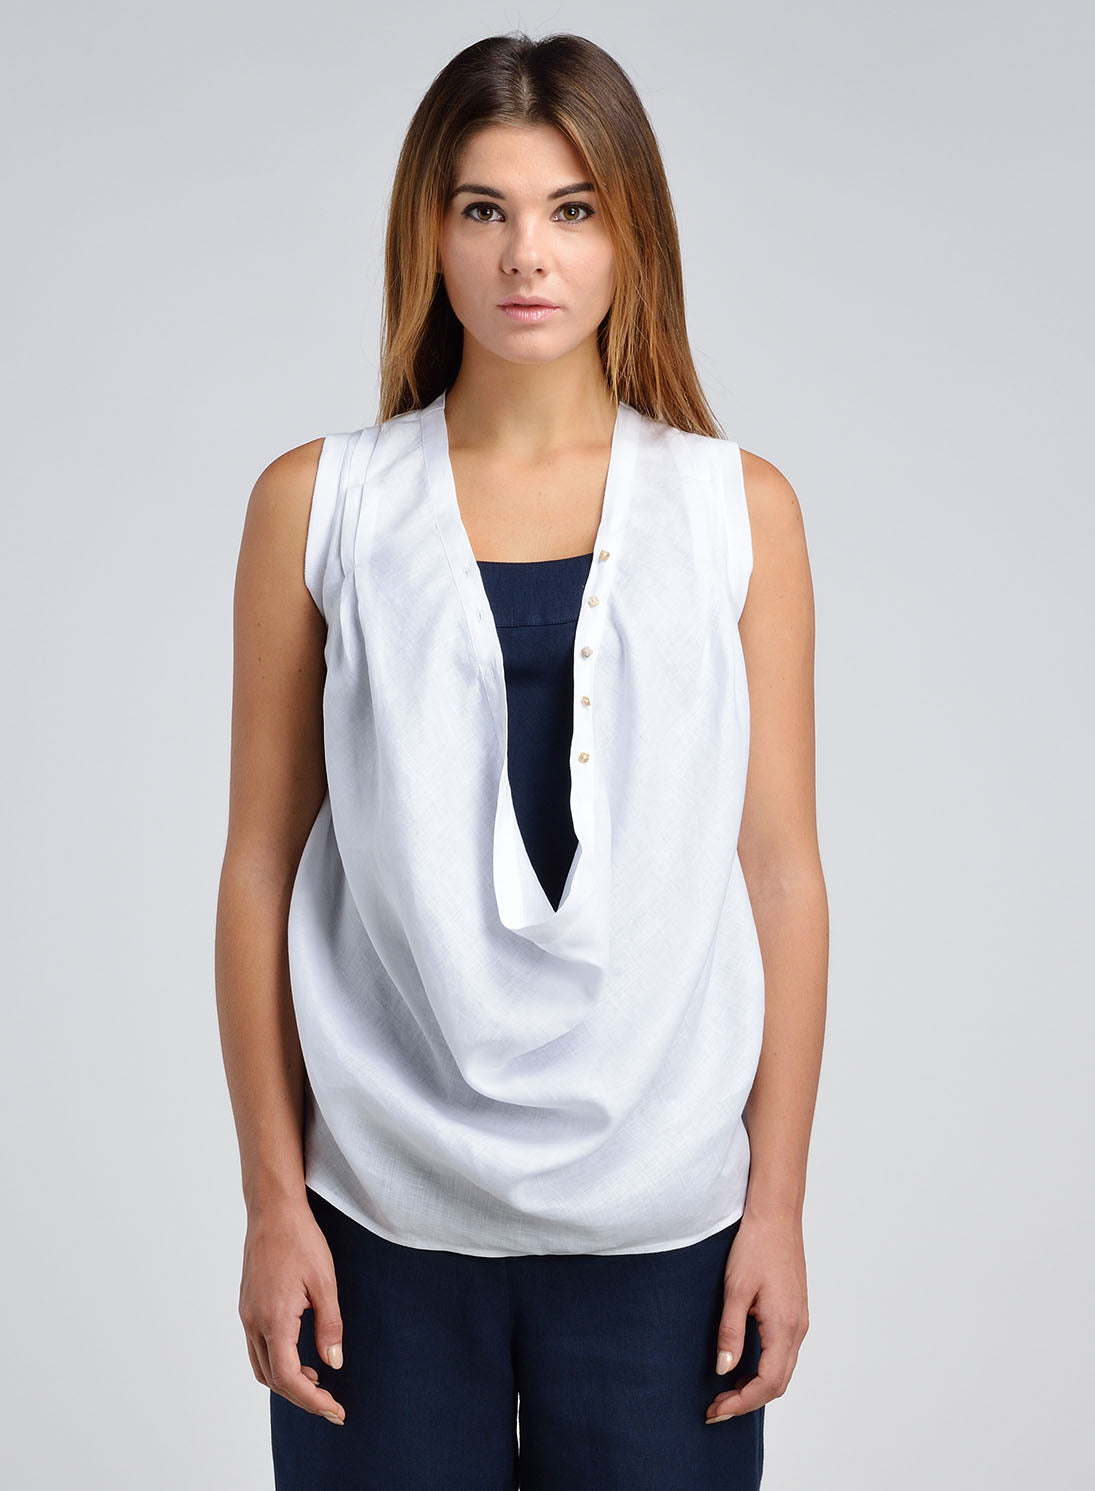 Women's Linen Top - Linen Draped Front Sleeveless Top | ANN G LINEN ...